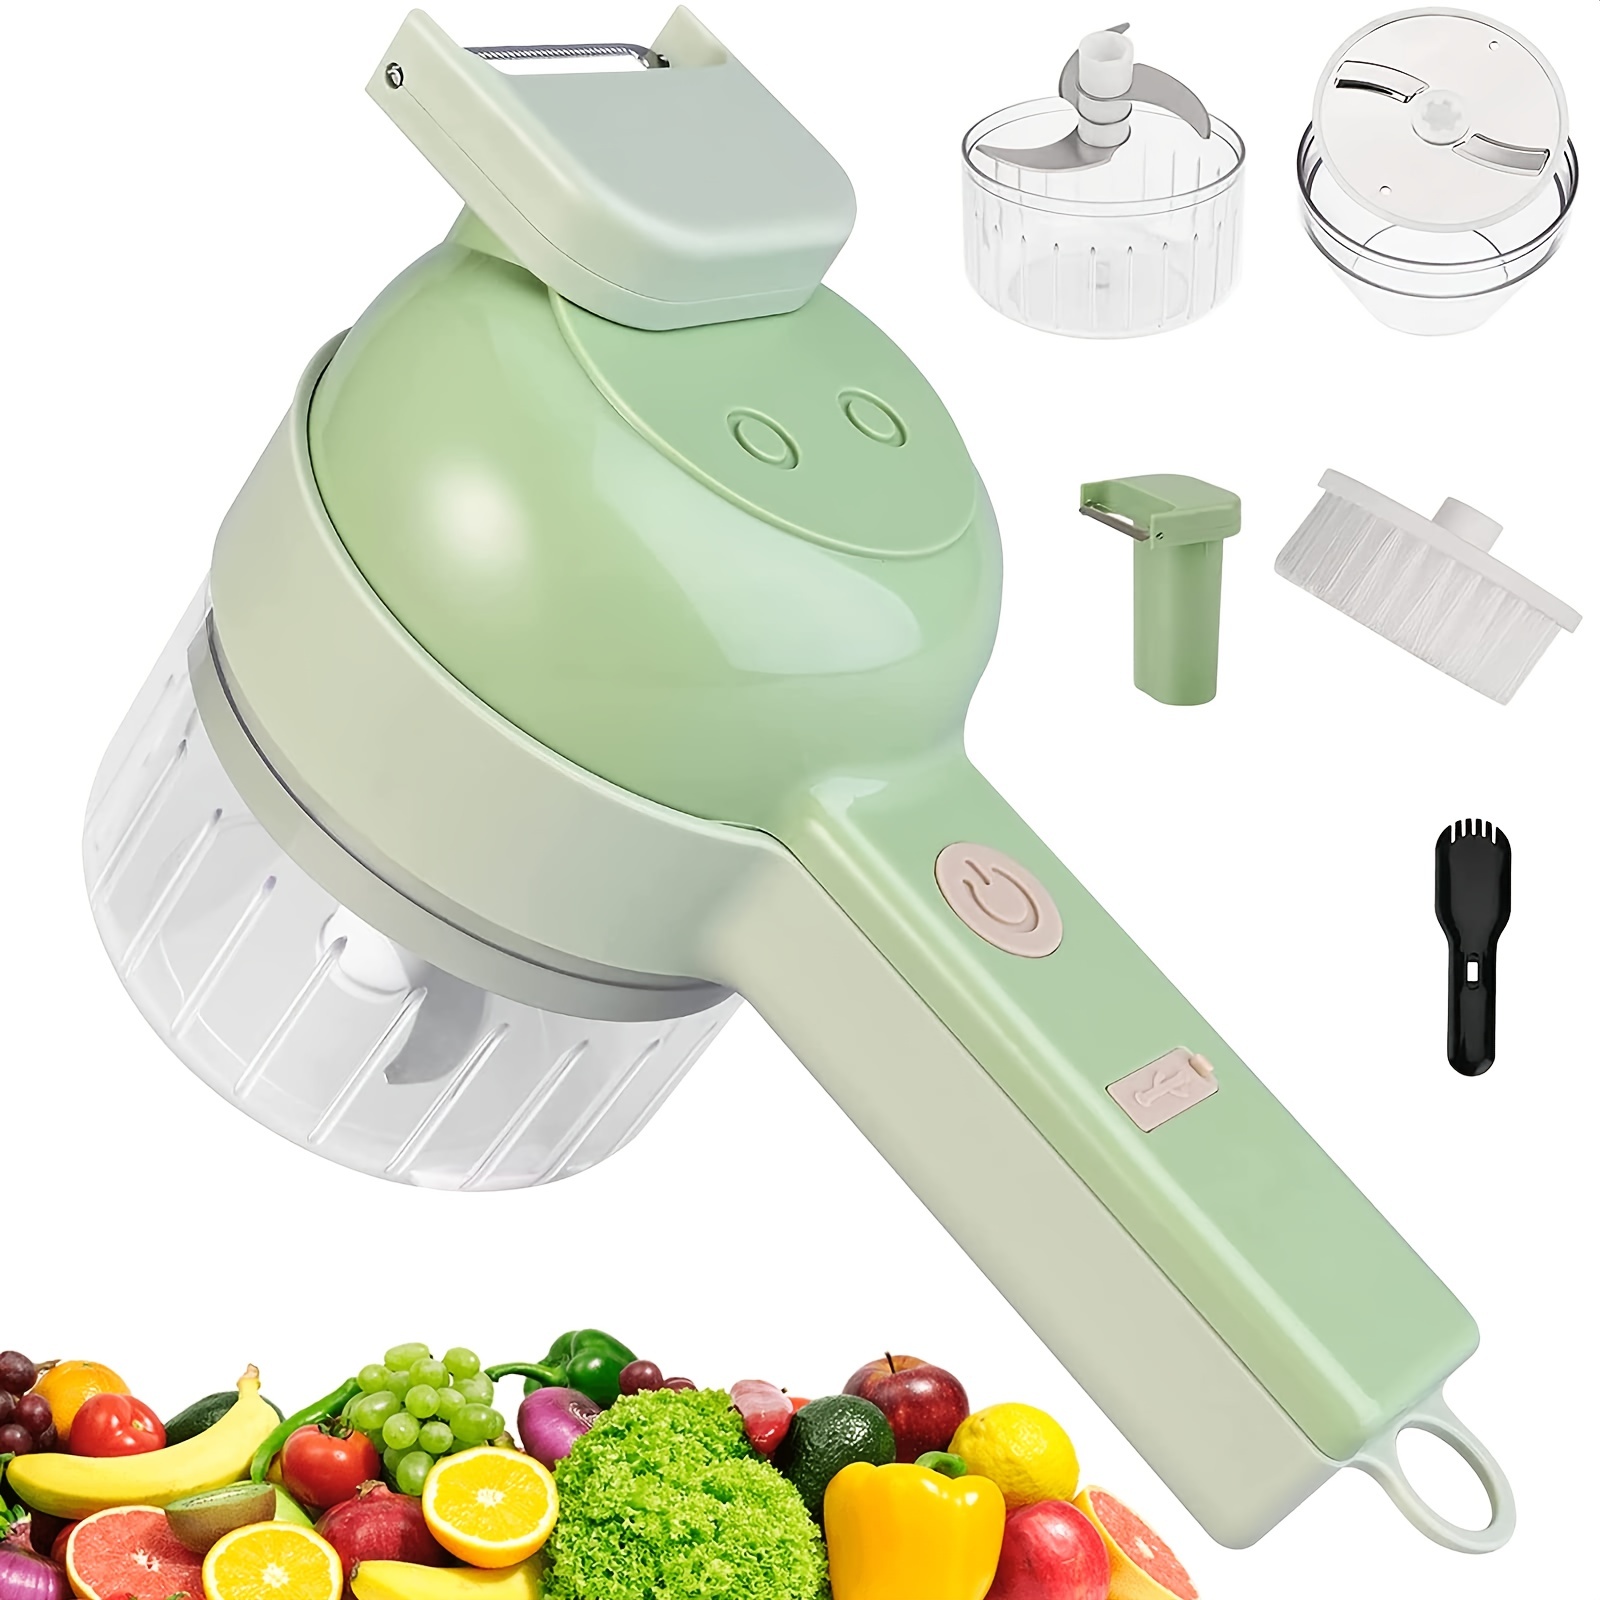 4 In 1 Electric Vegetable Cutter Set: Garlic Chopper, Onion Cutter, Chili Pepper Chopper & More